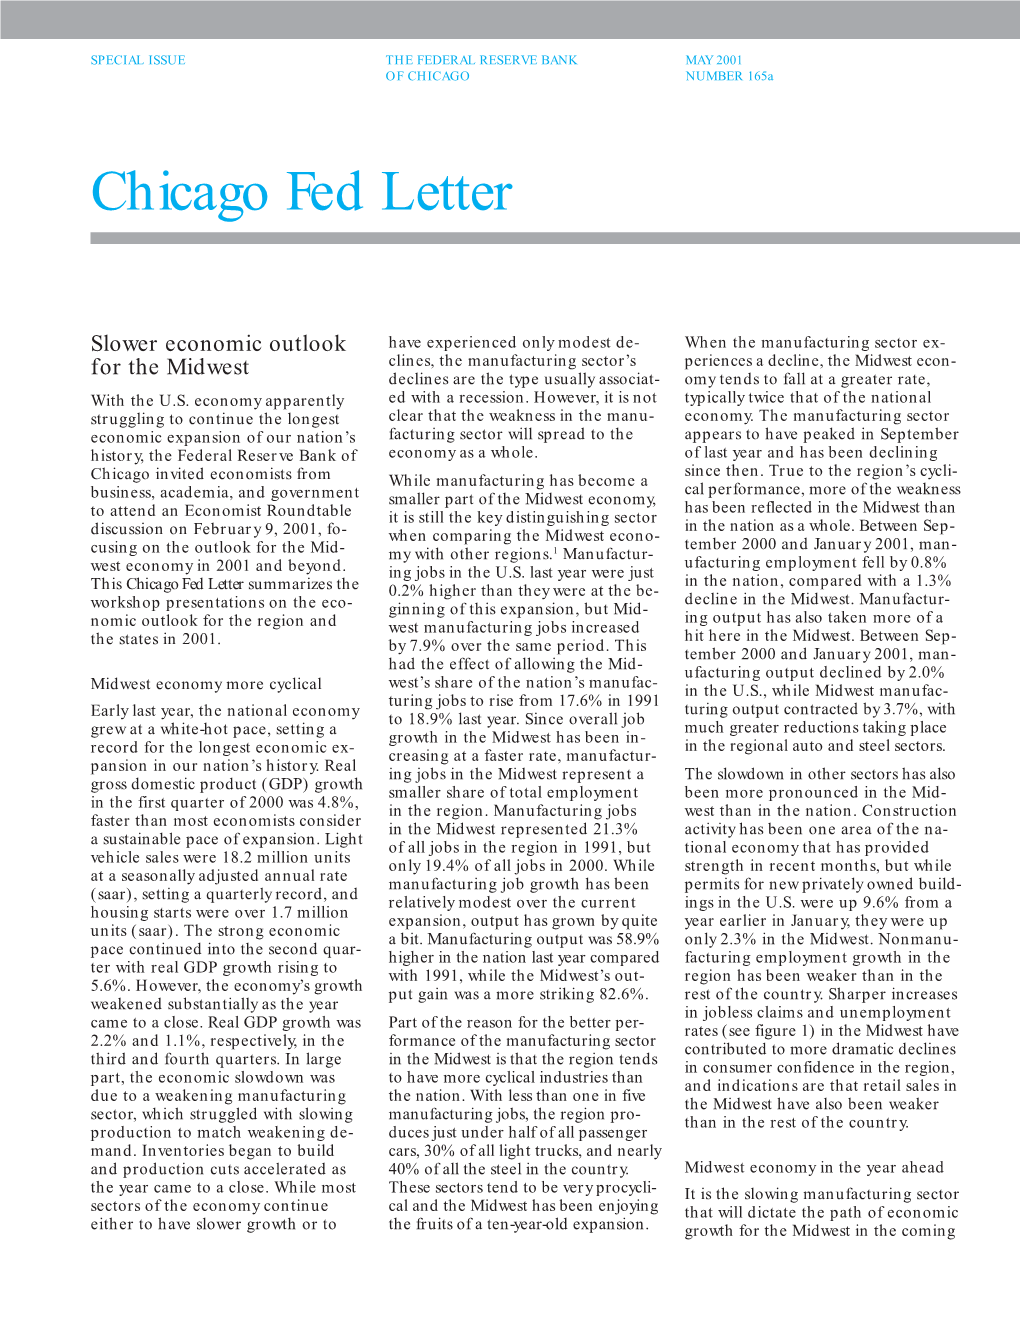 Chicago Fed Letter